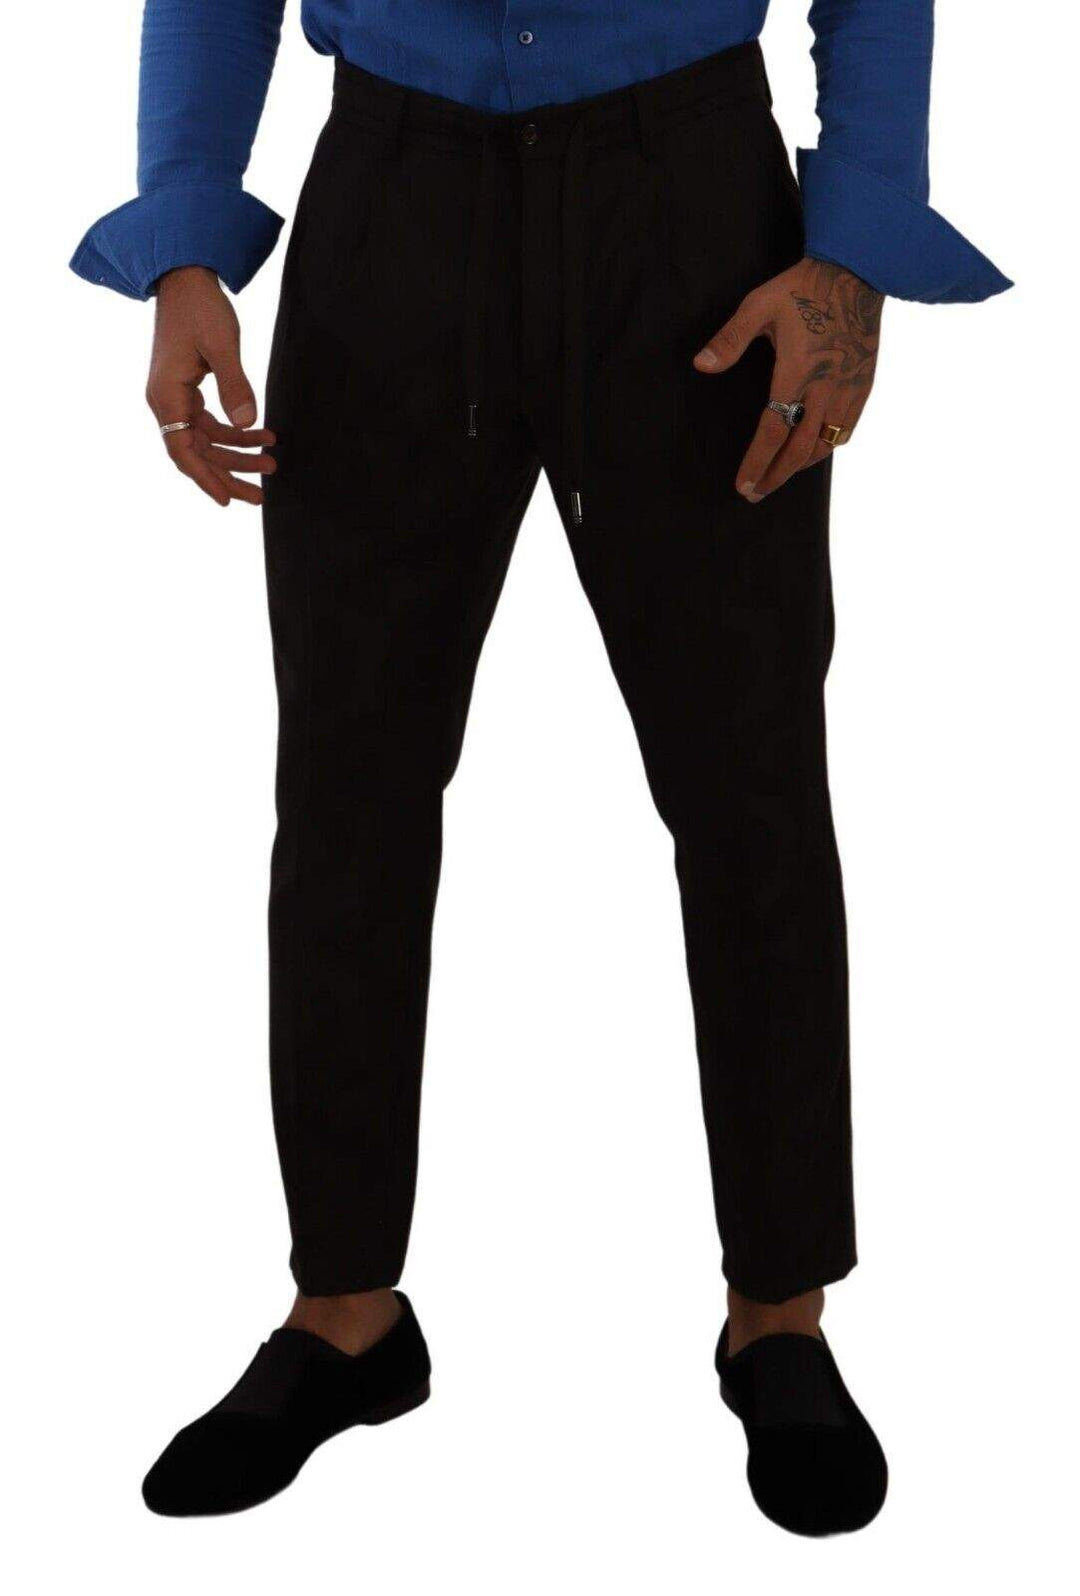 Dolce & Gabbana Bordeaux Wool  Skinny Trouser Pants #men, Bordeaux, Dolce & Gabbana, feed-1, IT48 | M, Jeans & Pants - Men - Clothing at SEYMAYKA